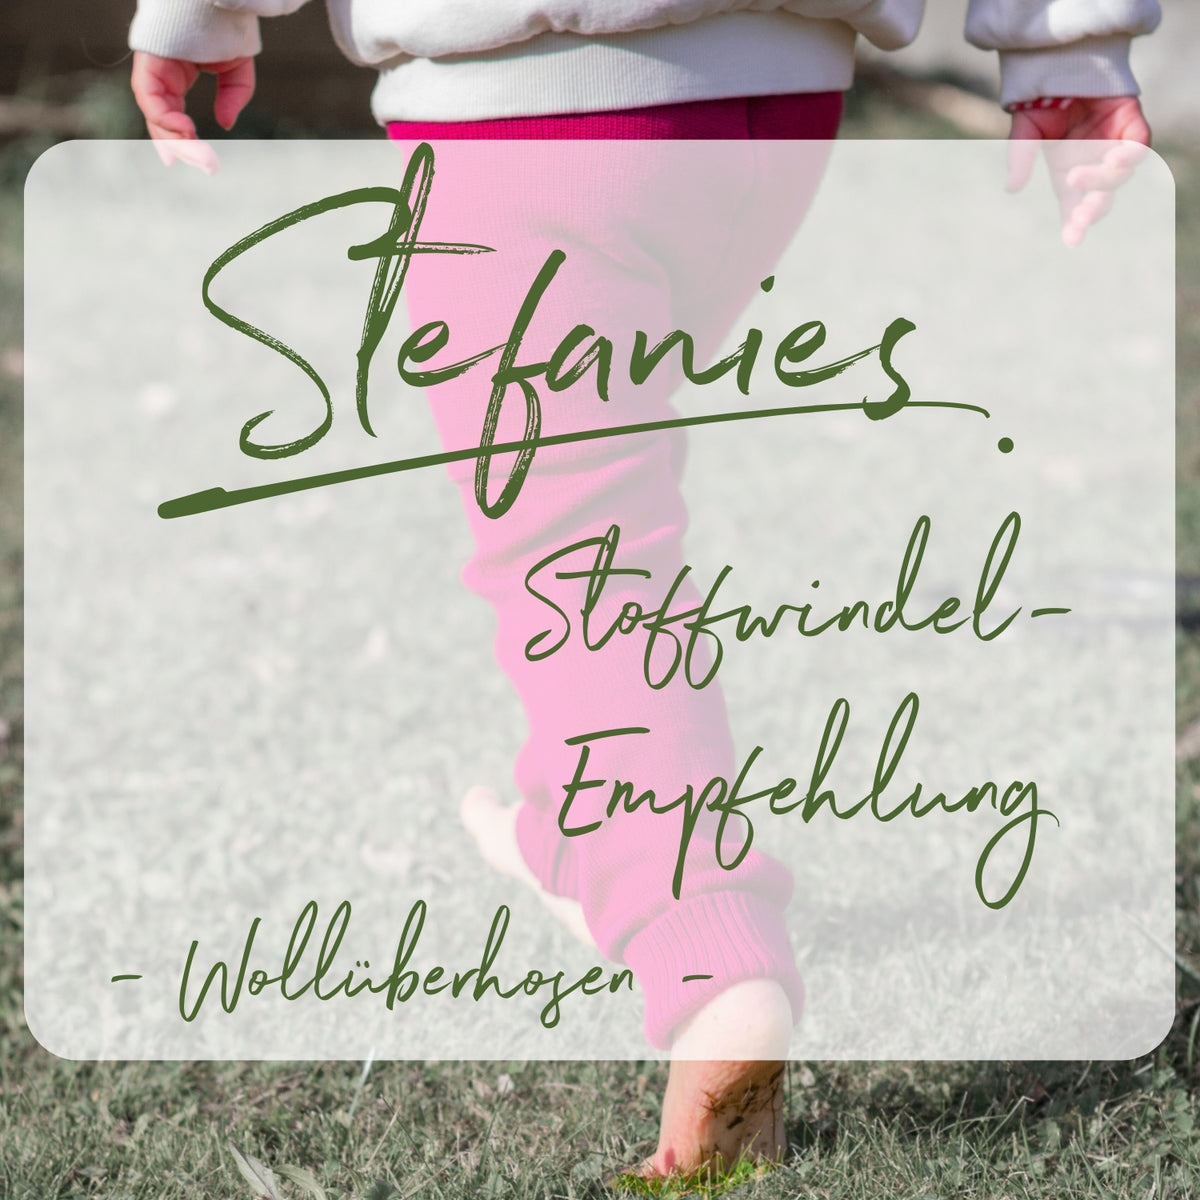 Stefanies Stoffwindel-Empfehlung Wollüberhosen